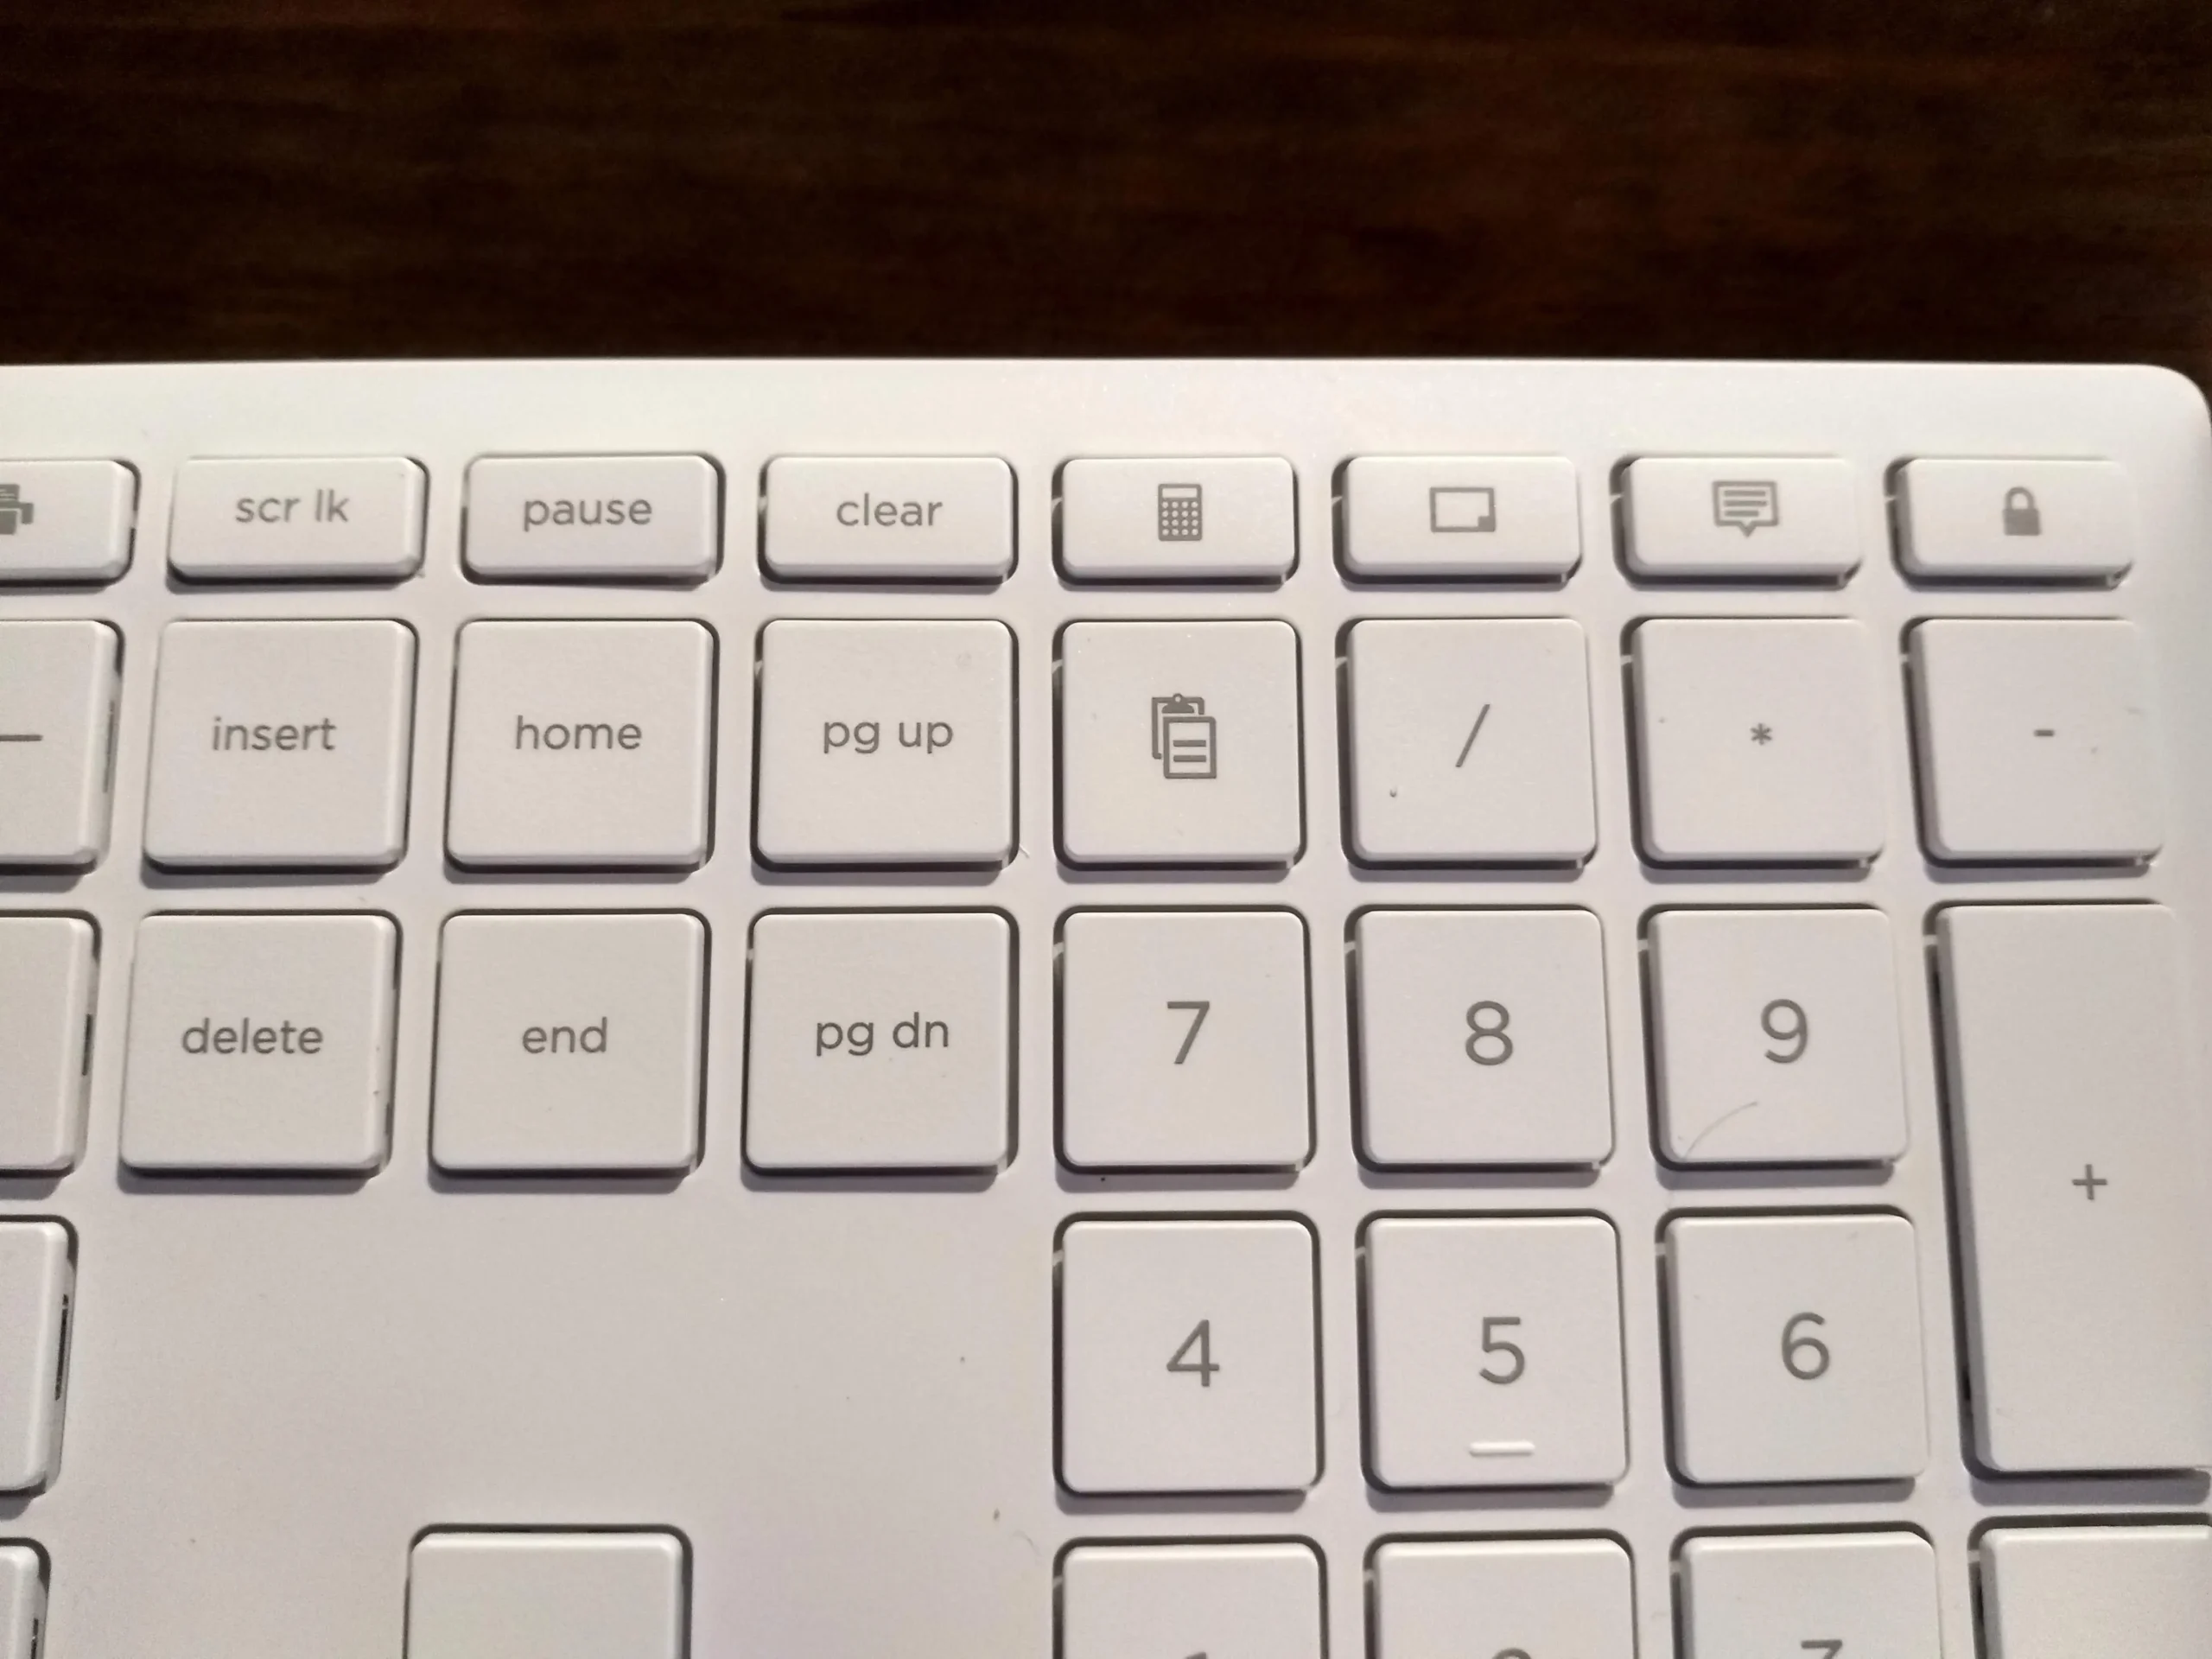 hewlett packard keyboard keys - What are the 7 special keys in keyboard